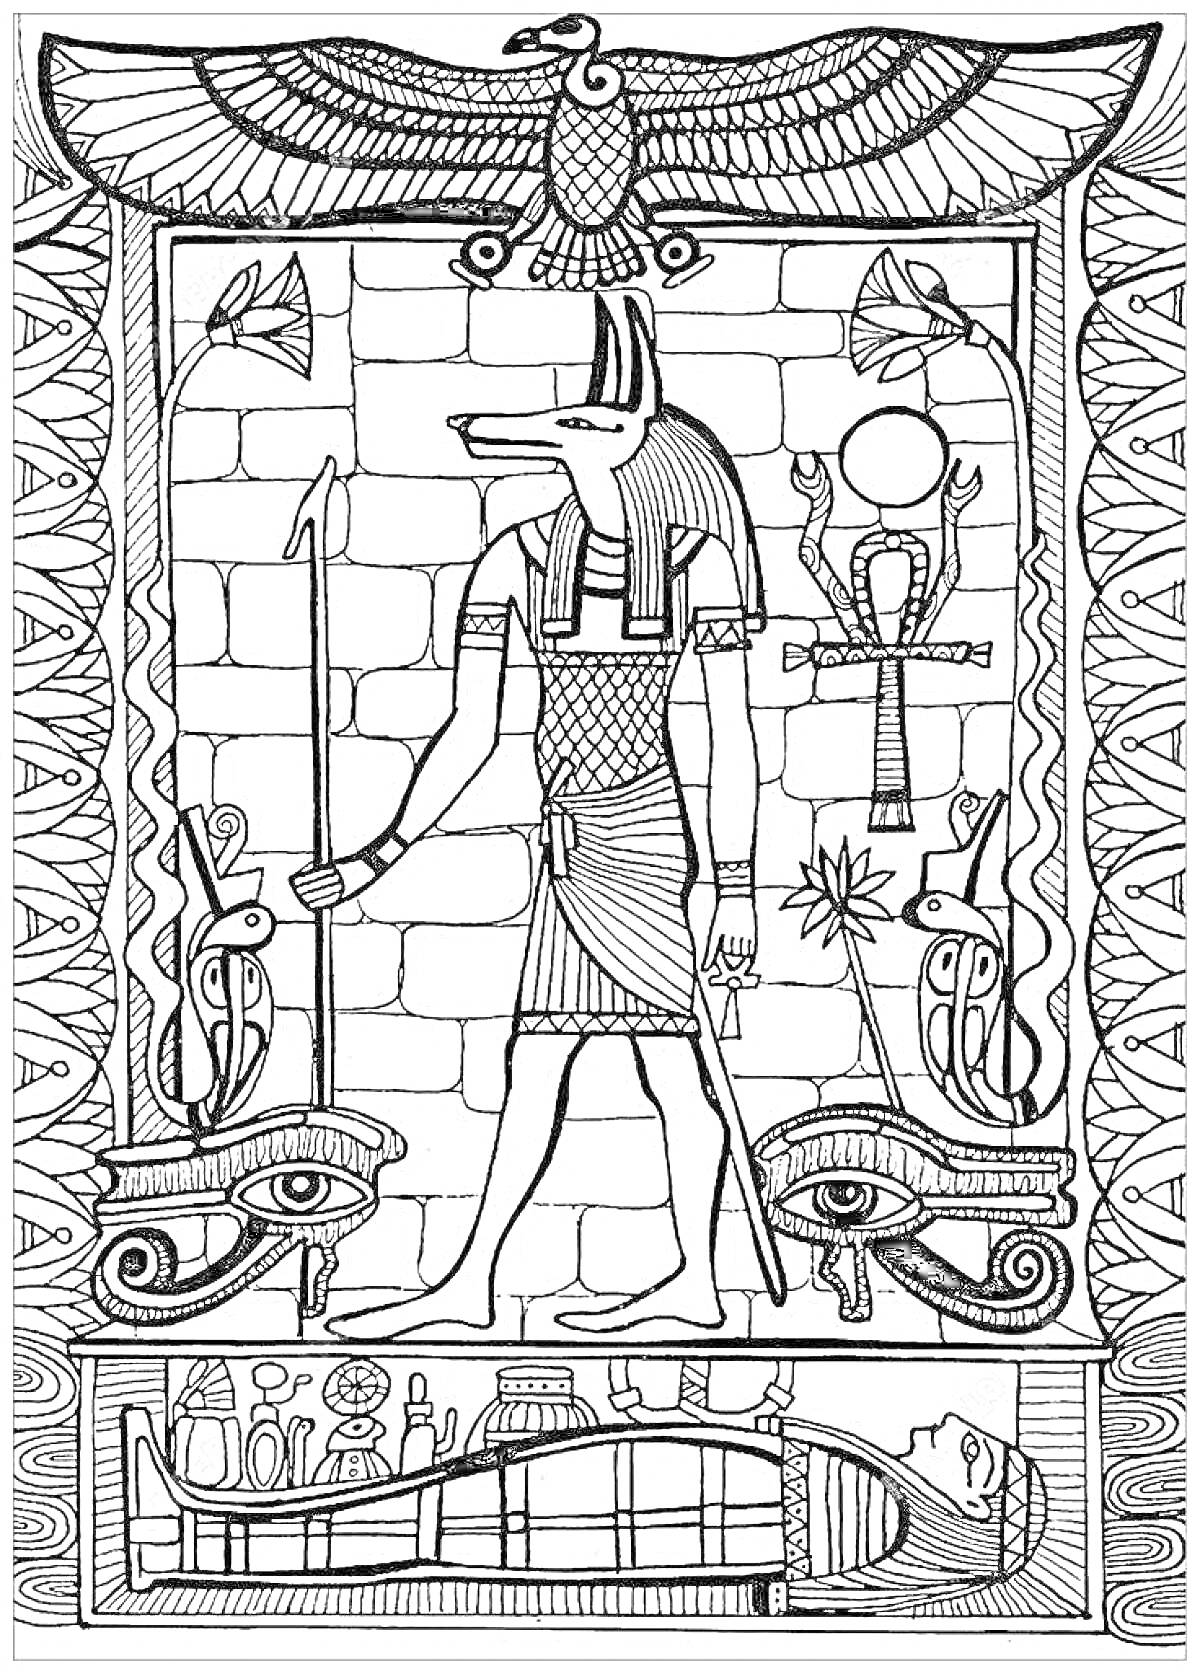 РаскраскаАнубис в Древнем Египте: бог с головой шакала, анкх, жук-скарабей, цветы лотоса, глазы Гора, мумия, кобра, иероглифы, фреска со змеями и птицами